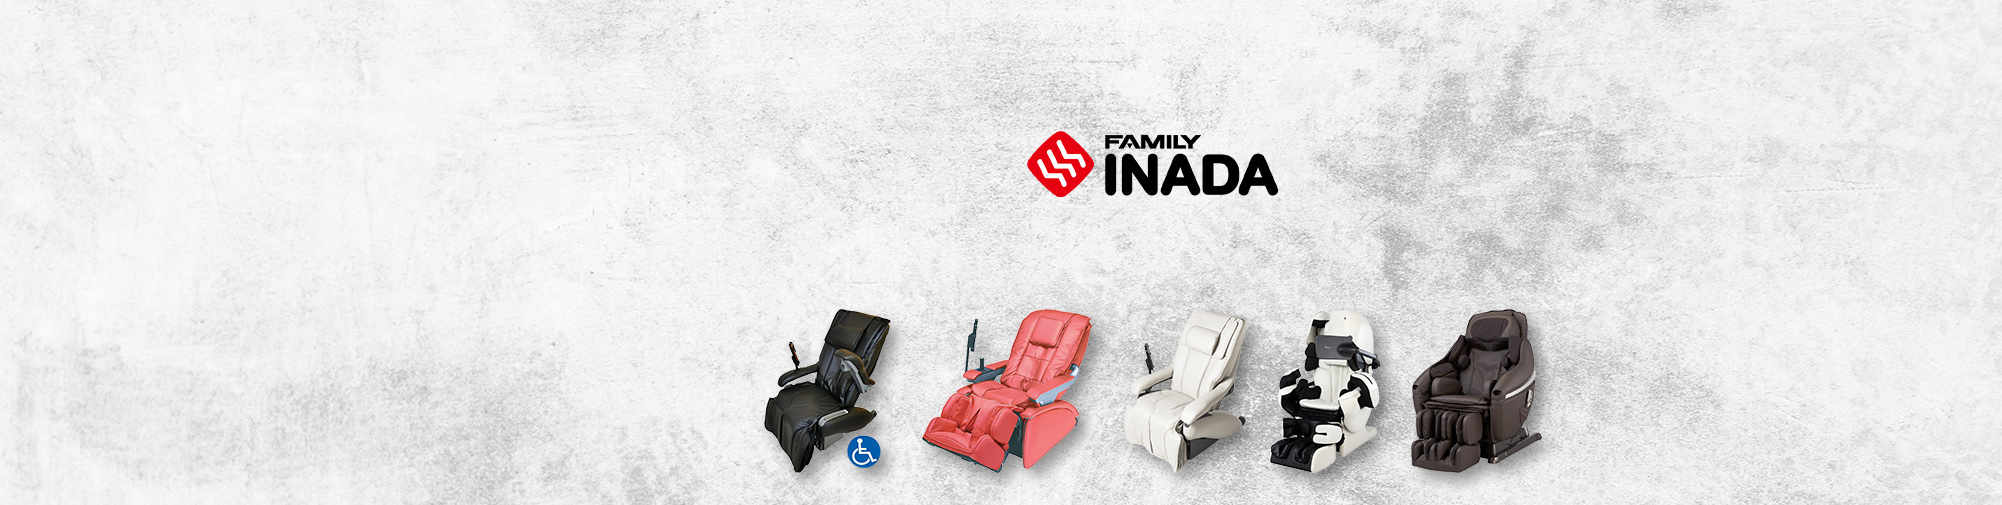 Familia Inada - companie japoneză tradițională | Massage Chair World